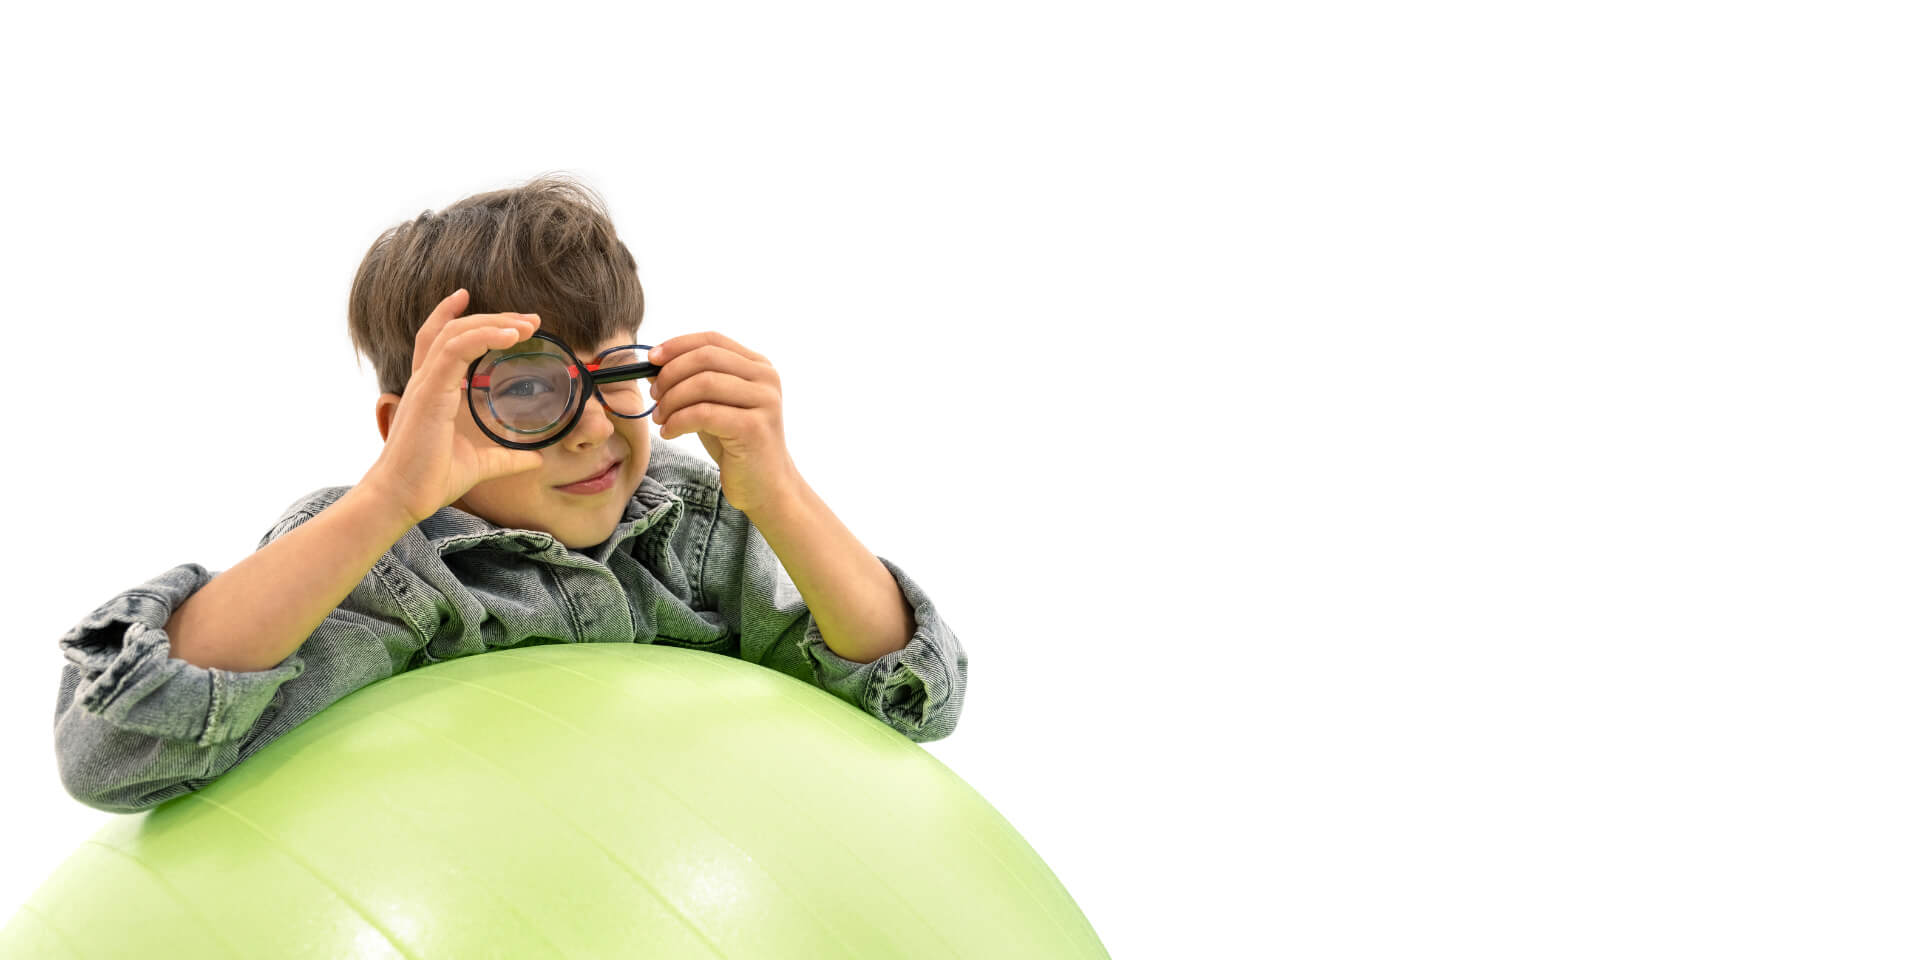 一個戴著蔡司近視控制眼鏡的男孩倚靠在體操球上，拿著放大鏡，單眼透過放大鏡觀看。